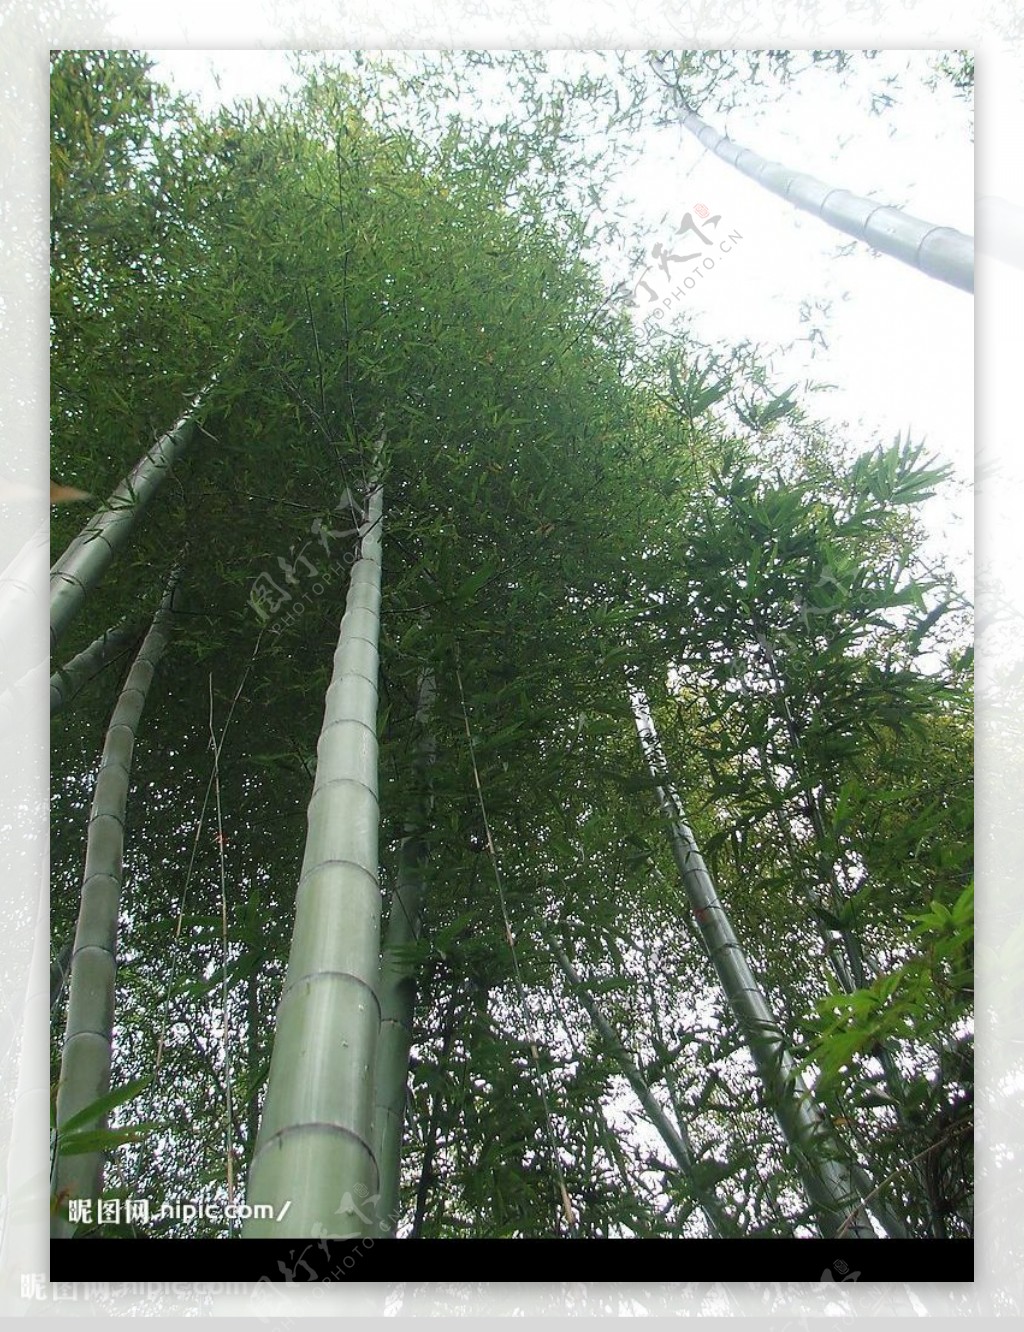 竹子绿竹节节高升竹子特写图片